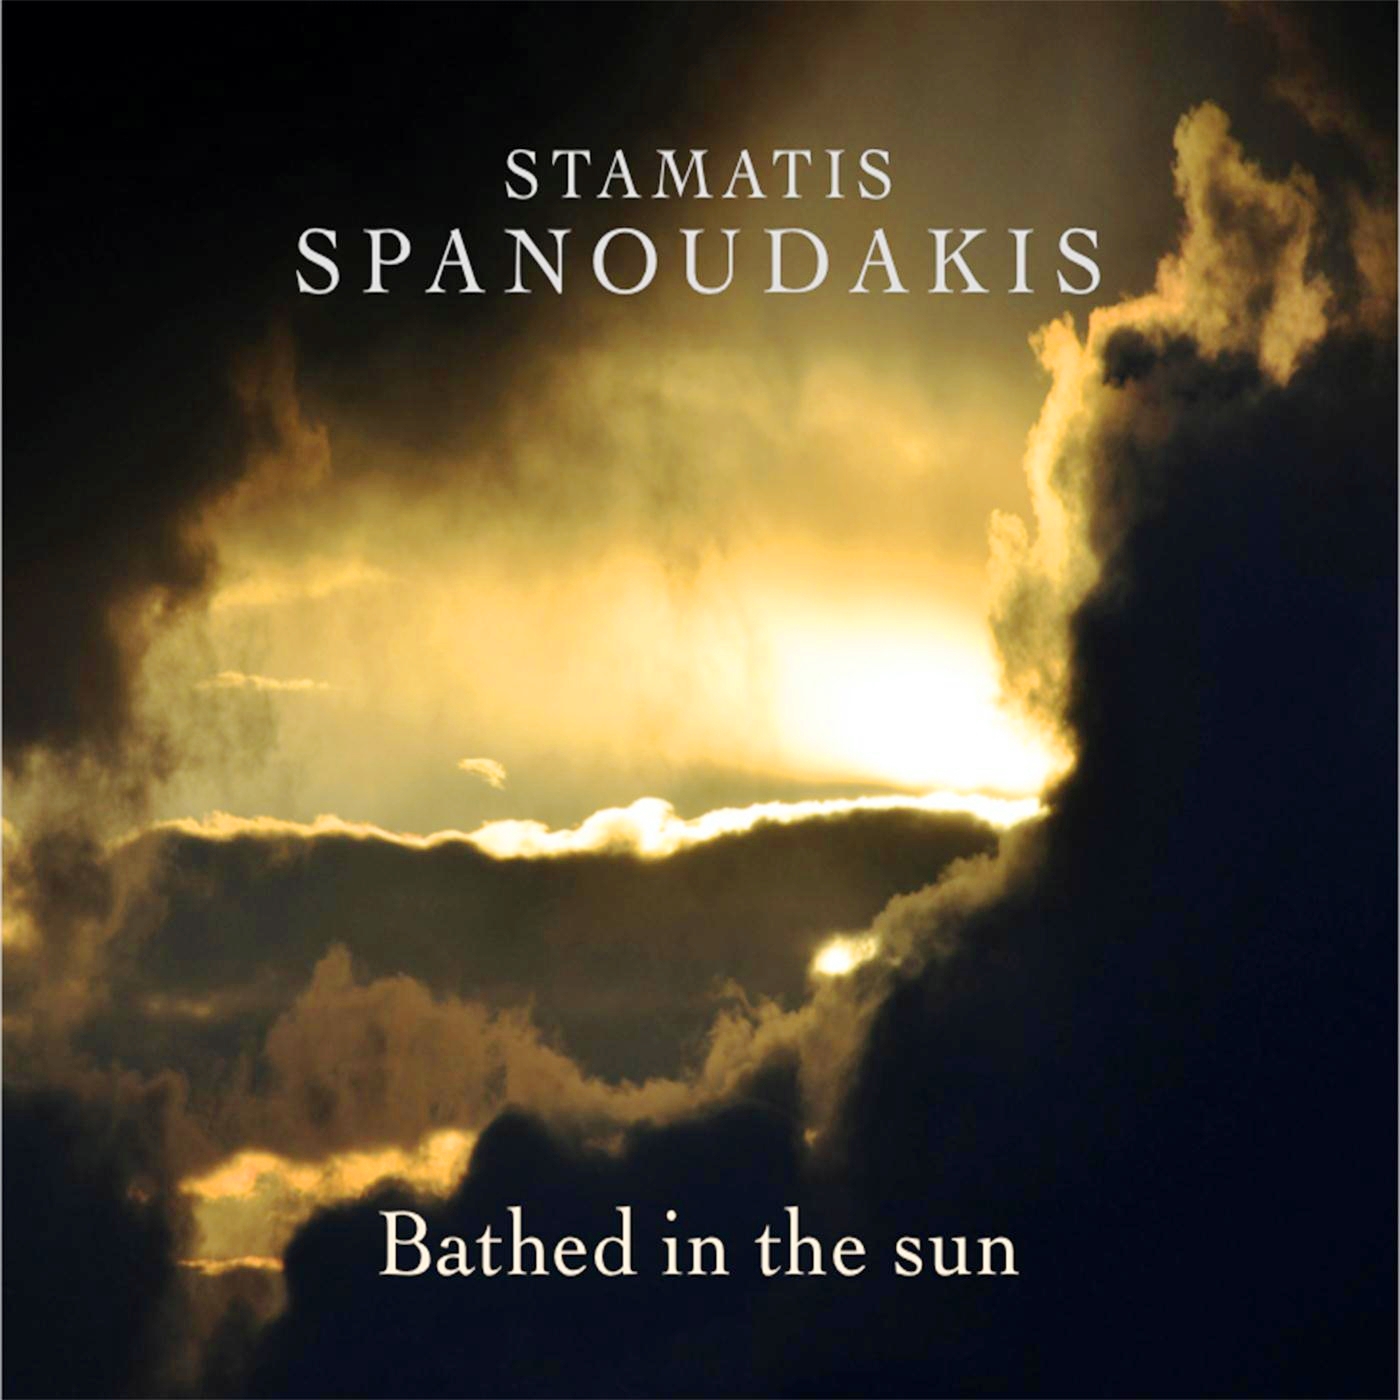 Stamatis2BSpanoudakis2B 2BBathed2Bin2Bthe2BSun2B252820162529 - stamatis spanoudakis - bathed in the sun (2016)